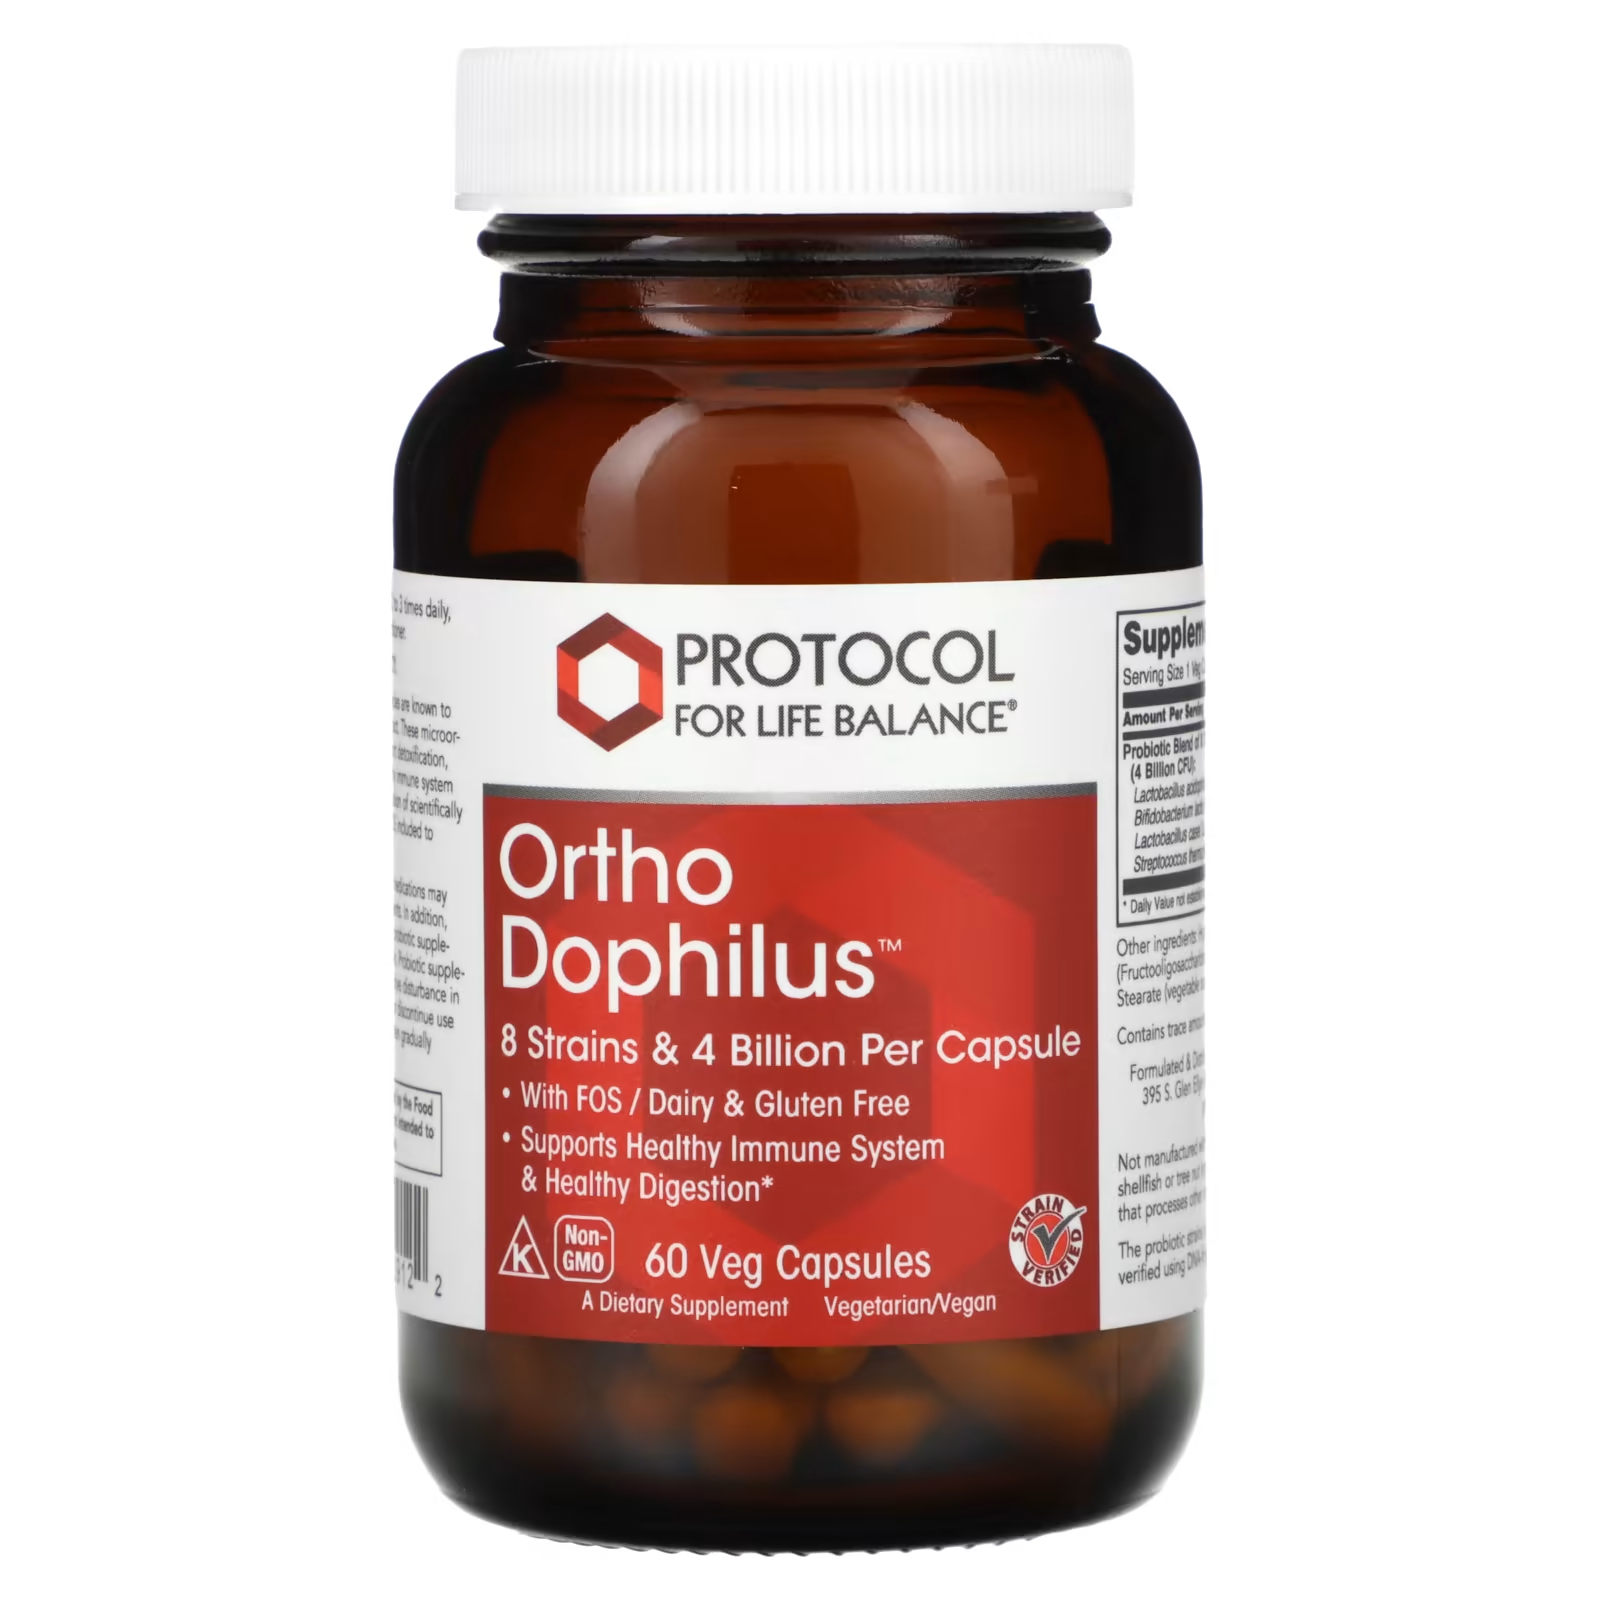 цена Пищевая добавка Protocol for Life Balance Ortho Dophilus, 60 капсул